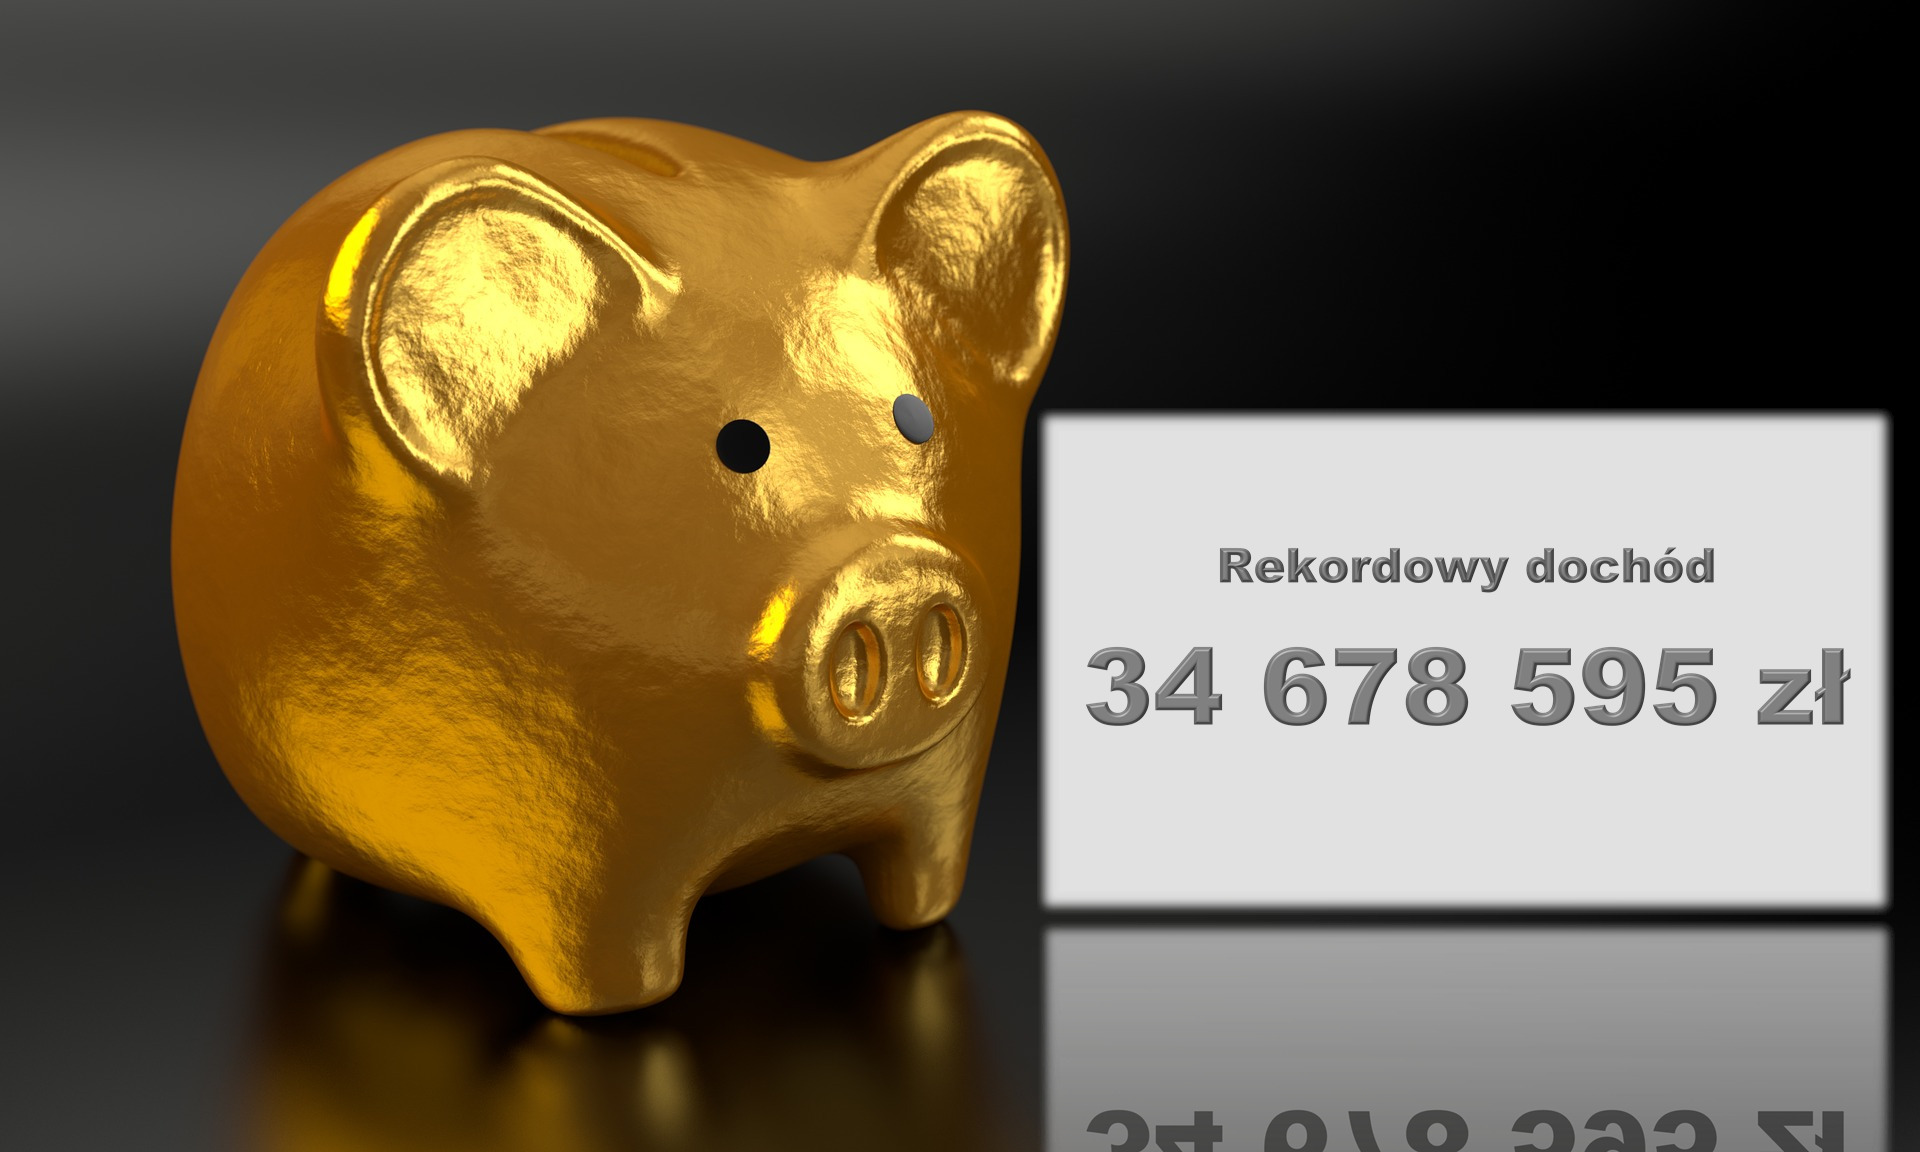 Złota skarbonka i napis "Rekordowy dochód 34678595 zł"